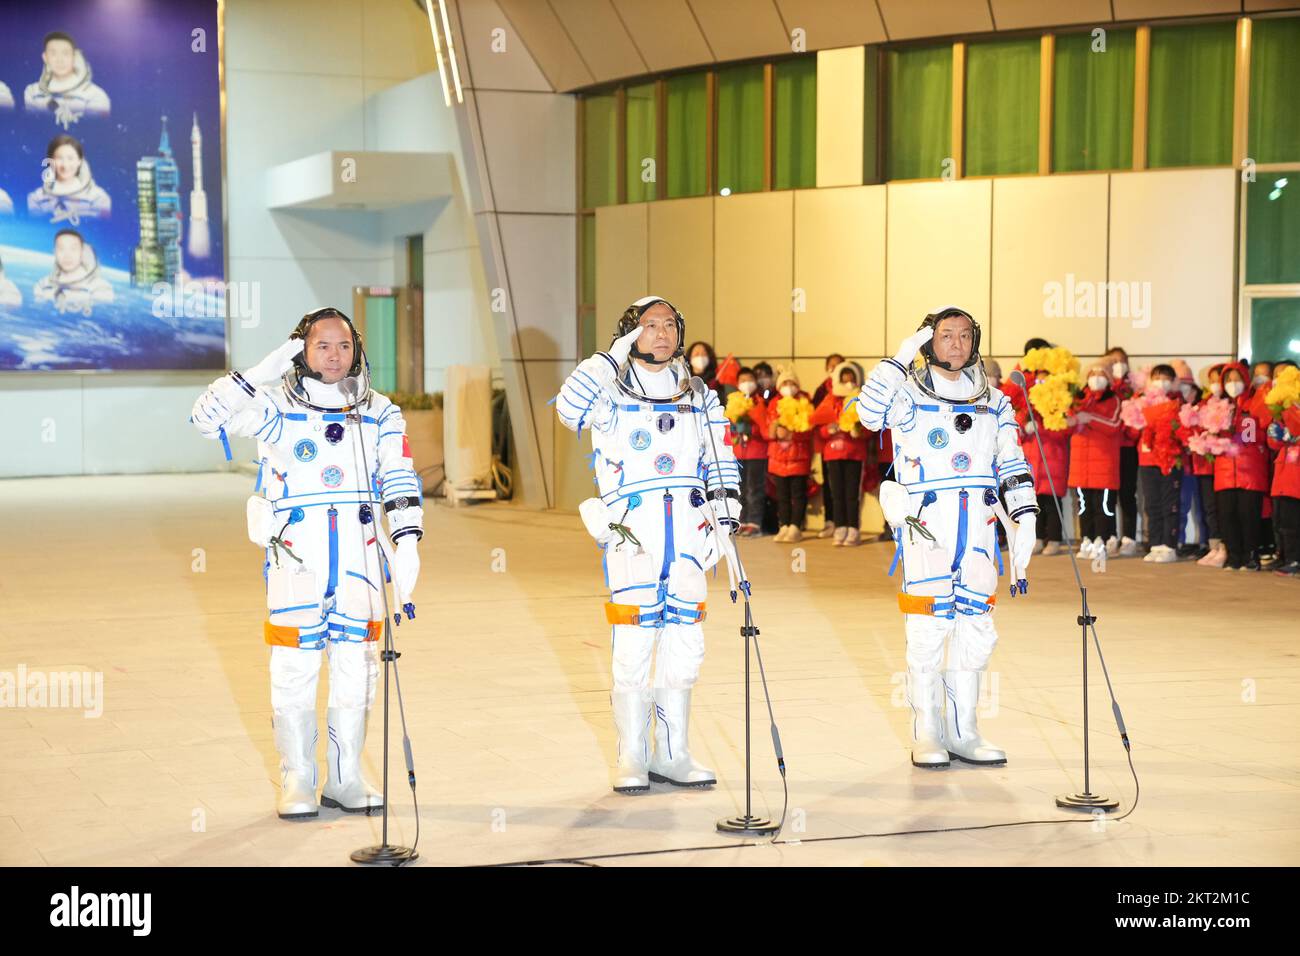 (221129) -- JIUQUAN, 29. November 2022 (Xinhua) -- Eine Abschiedszeremonie für drei chinesische Astronauten der bemannten Raumfahrtmission Shenzhou-15 findet am 29. November 2022 im Jiuquan Satellite Launch Center im Nordwesten Chinas statt. Die Astronauten Fei Junlong (C), Deng Qingming (R) und Zhang Lu haben jahrelange mühsame Schulungen für diese sechsmonatige Mission erhalten, in deren Verlauf der Bau der chinesischen Raumstation offiziell abgeschlossen sein wird. (Xinhua/Li-Gang) Stockfoto